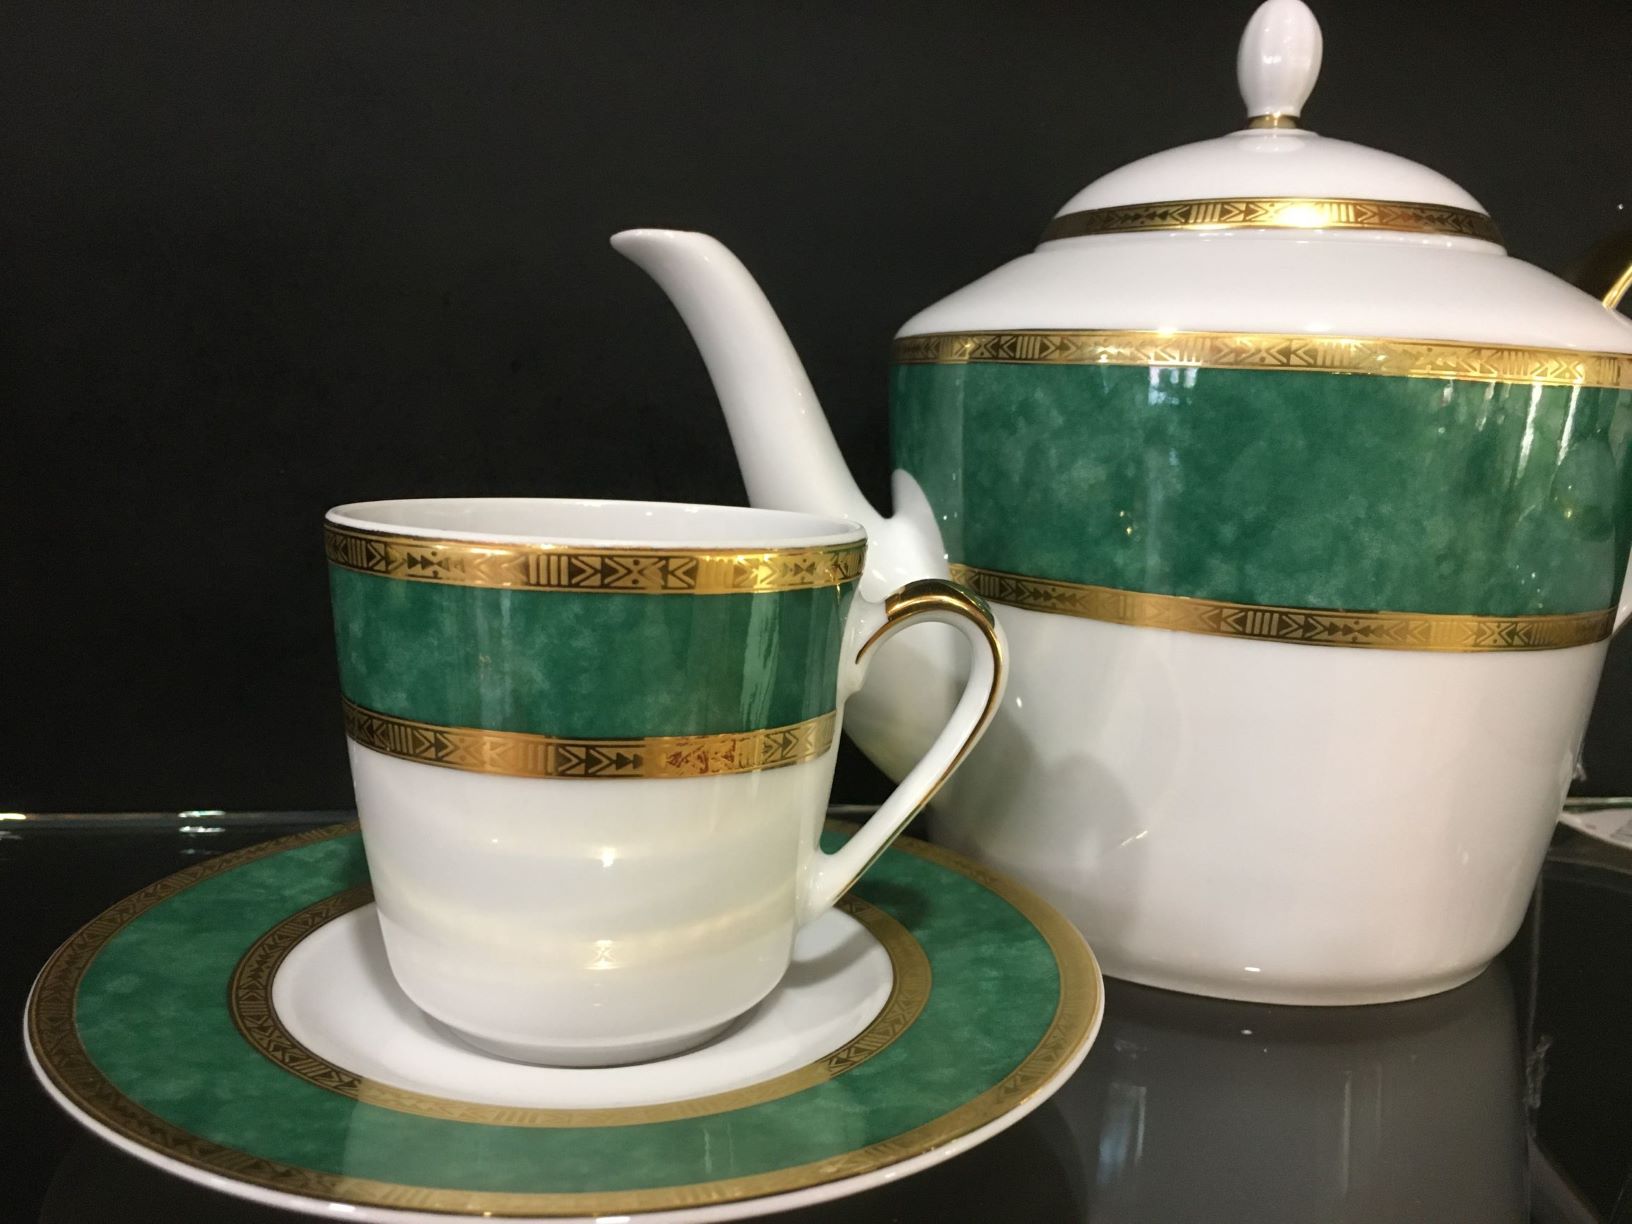 Servizio da tè in porcellana decorata con oro zecchino. Composto da : 12 tazze da tè con piatto in porcellana1 teiera in porcellana1 zuccheriera in porcellana. In negozio e online su tuttochic.it